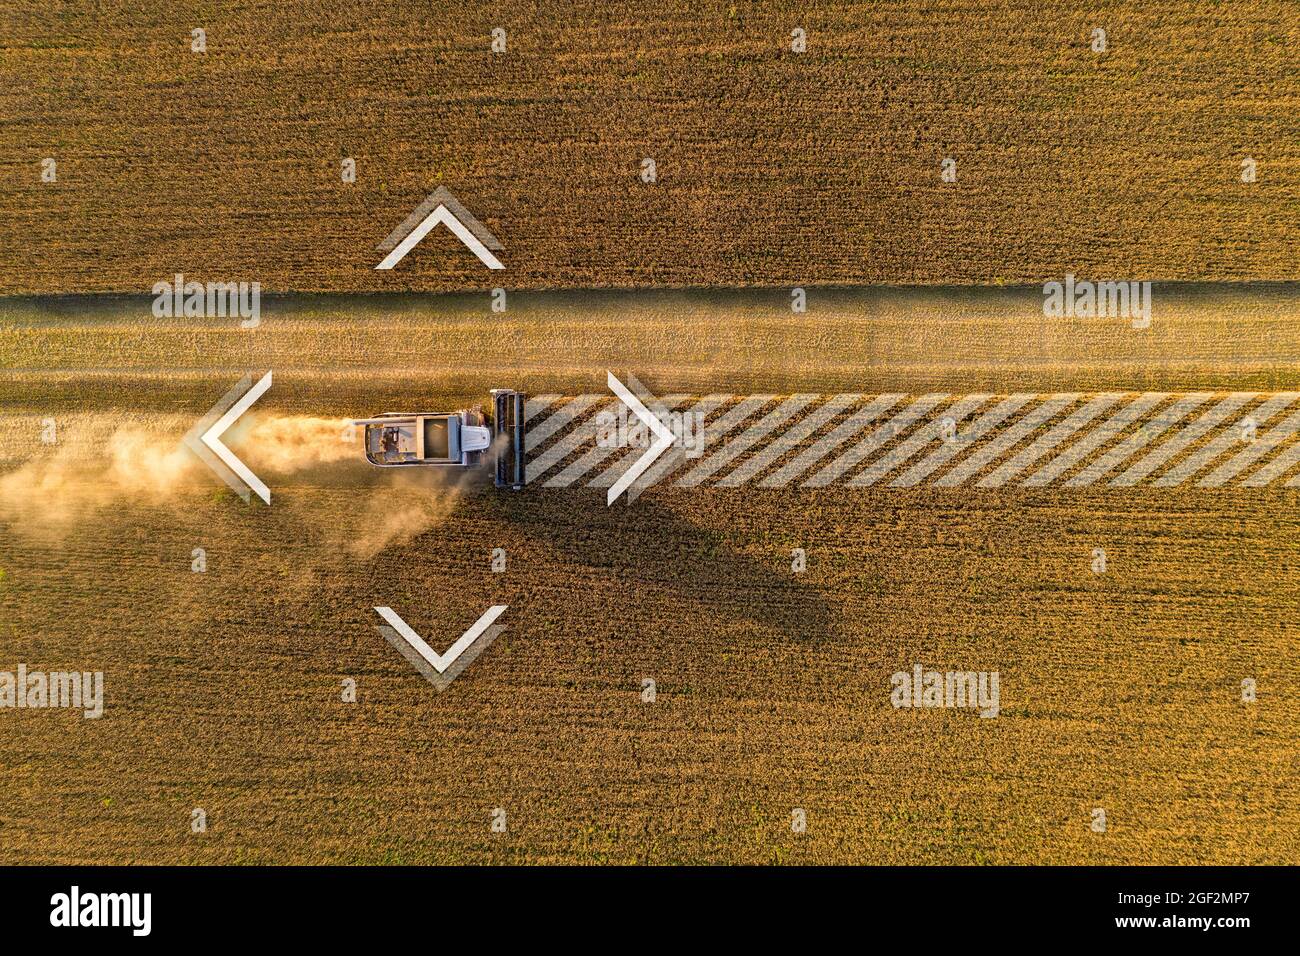 Autonomer Harvester auf dem Feld. Digitale Transformation in der Landwirtschaft Stockfoto